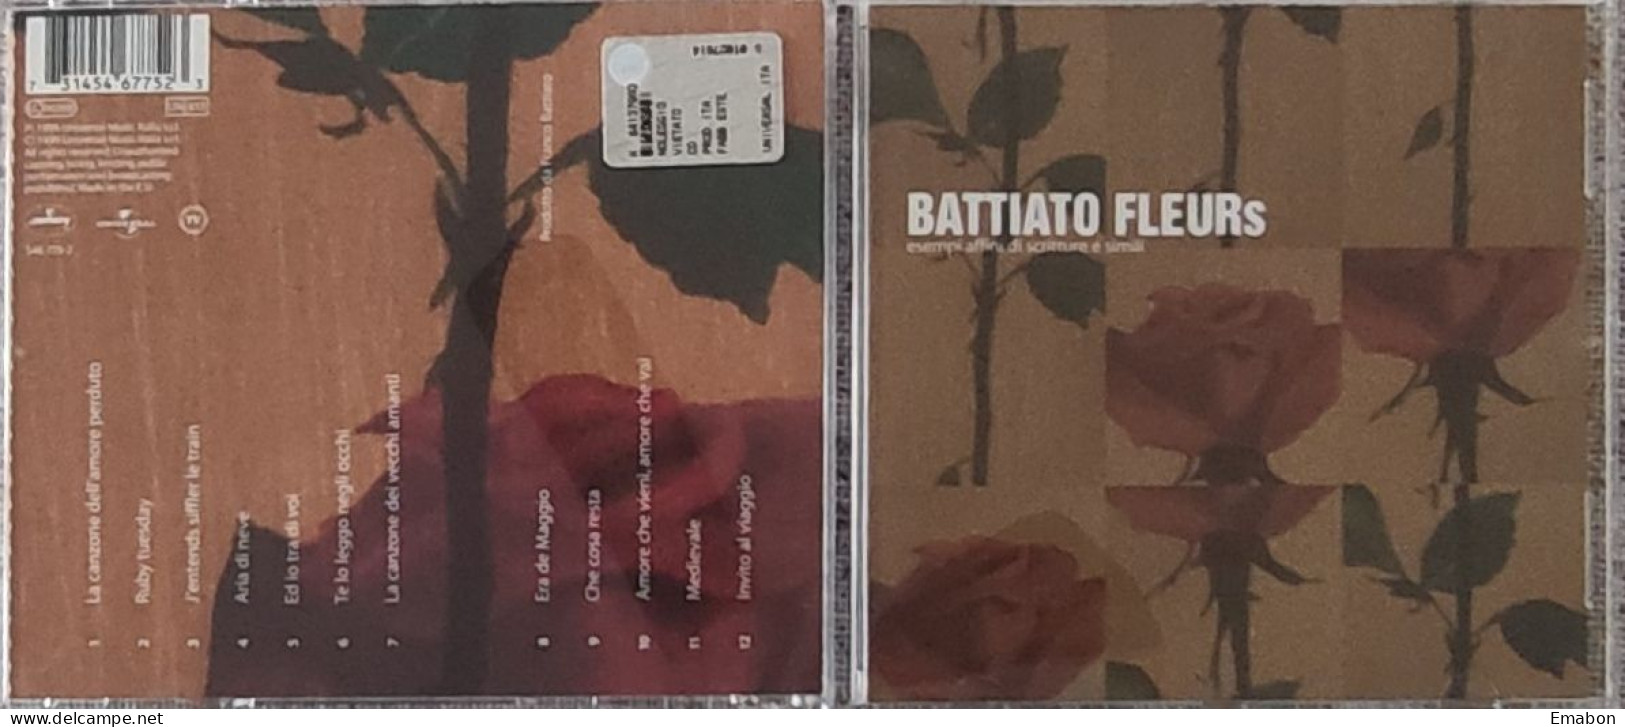 BORGATTA -  Cd  FRANCO BATTIATO   - FLEURS  - UNIVERSAL MUSIC  1999  -  USATO In Buono Stato - Sonstige - Italienische Musik